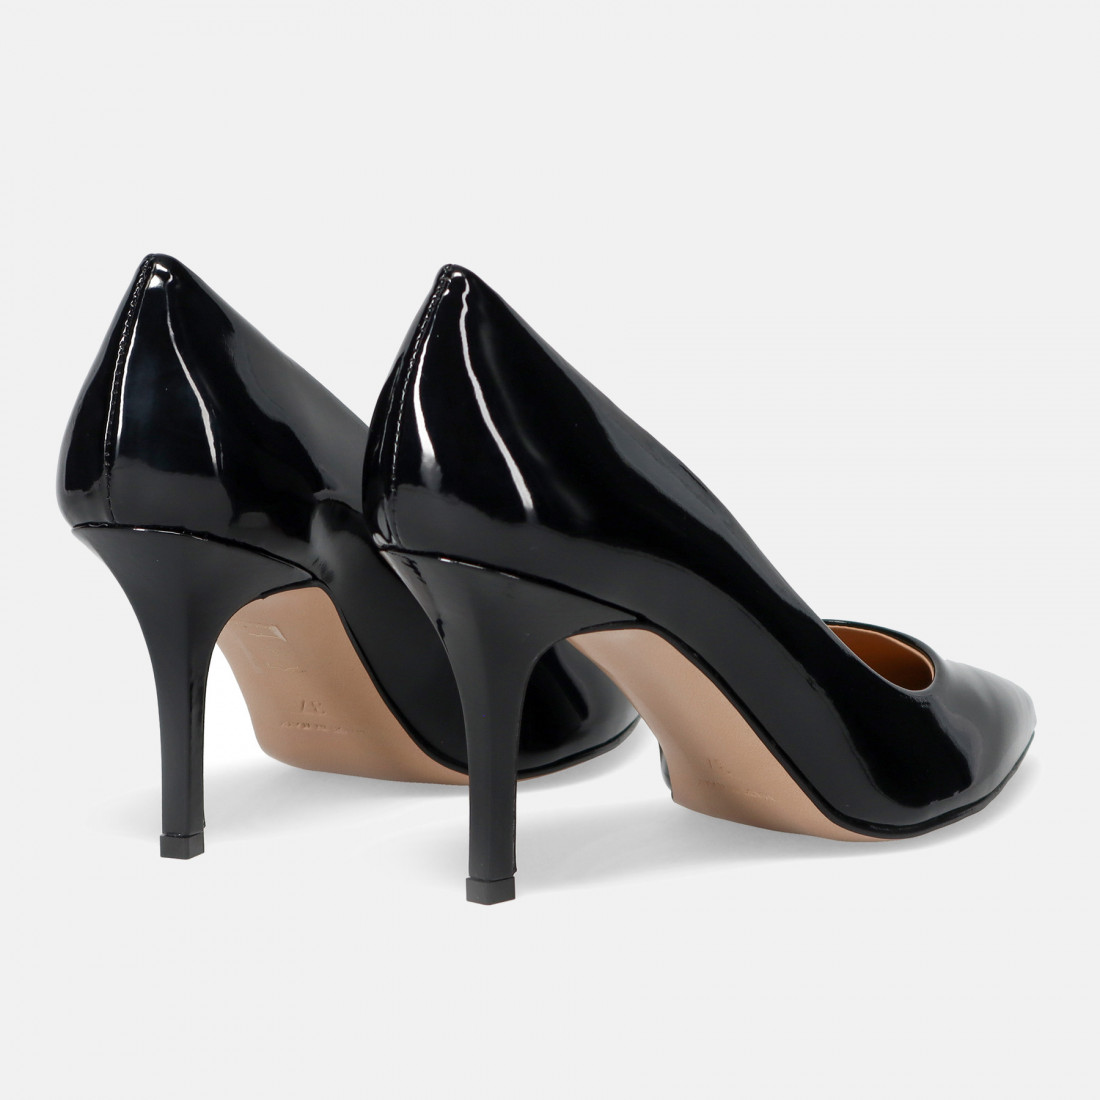 Sangiorgio black pump in patent leather with medium heel